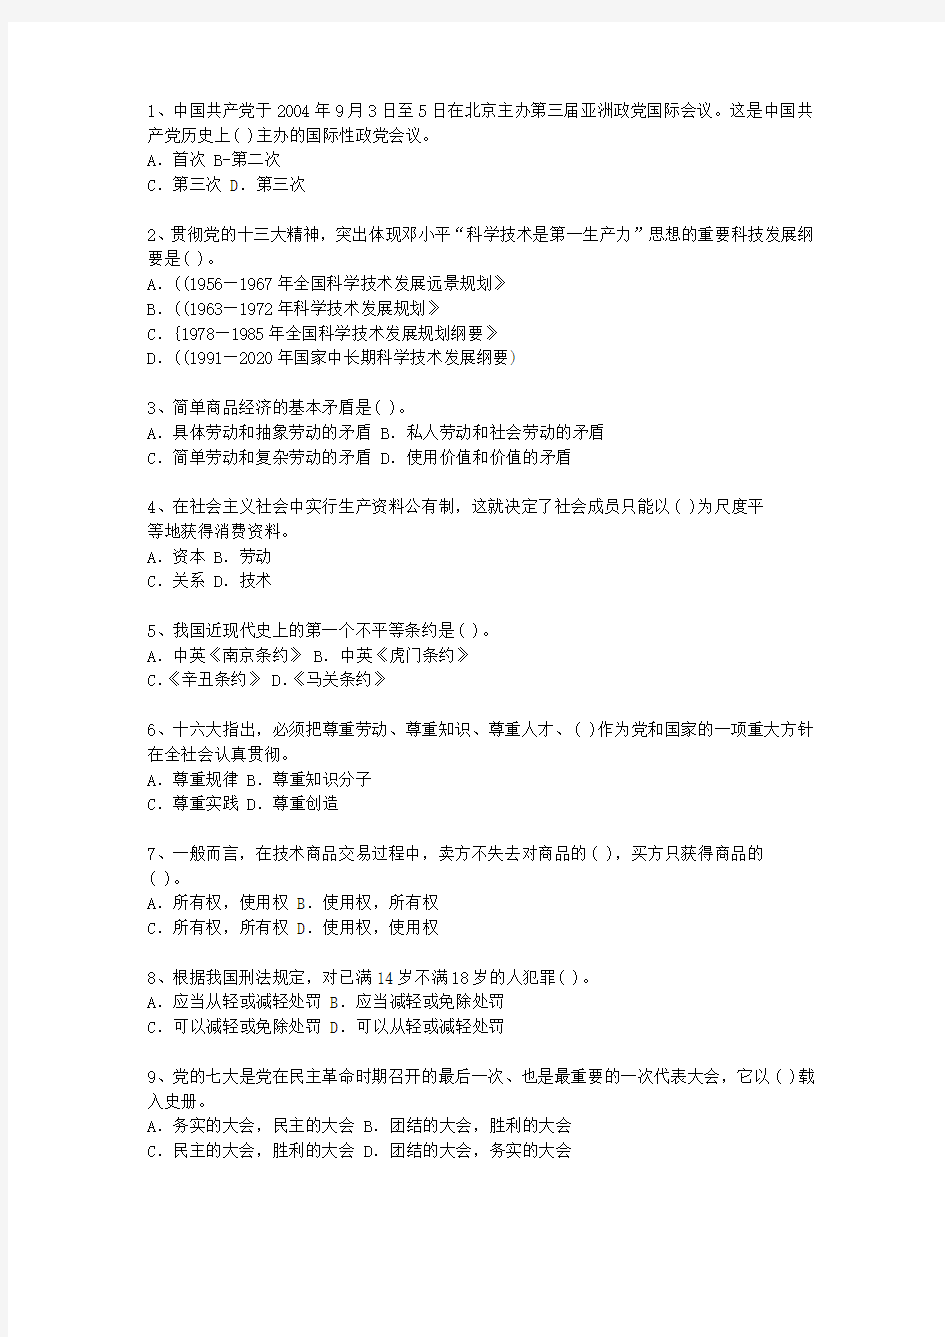 2013香港特别行政区副科级领导干部公开选拔考试答题技巧